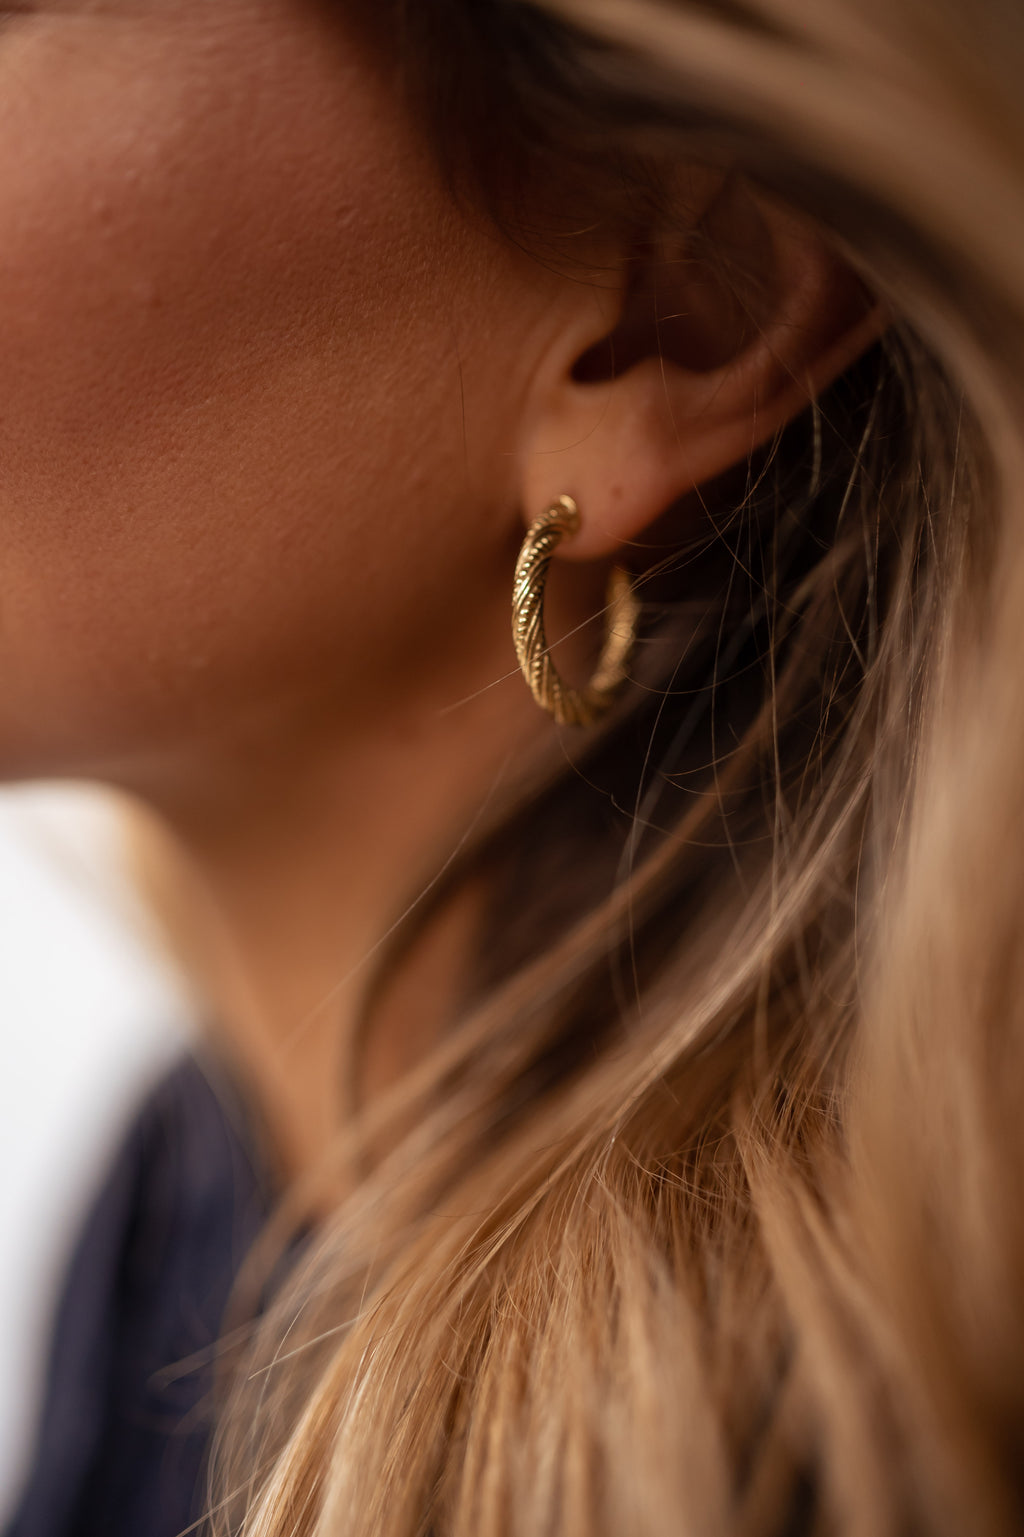 Michou earrings - Golden